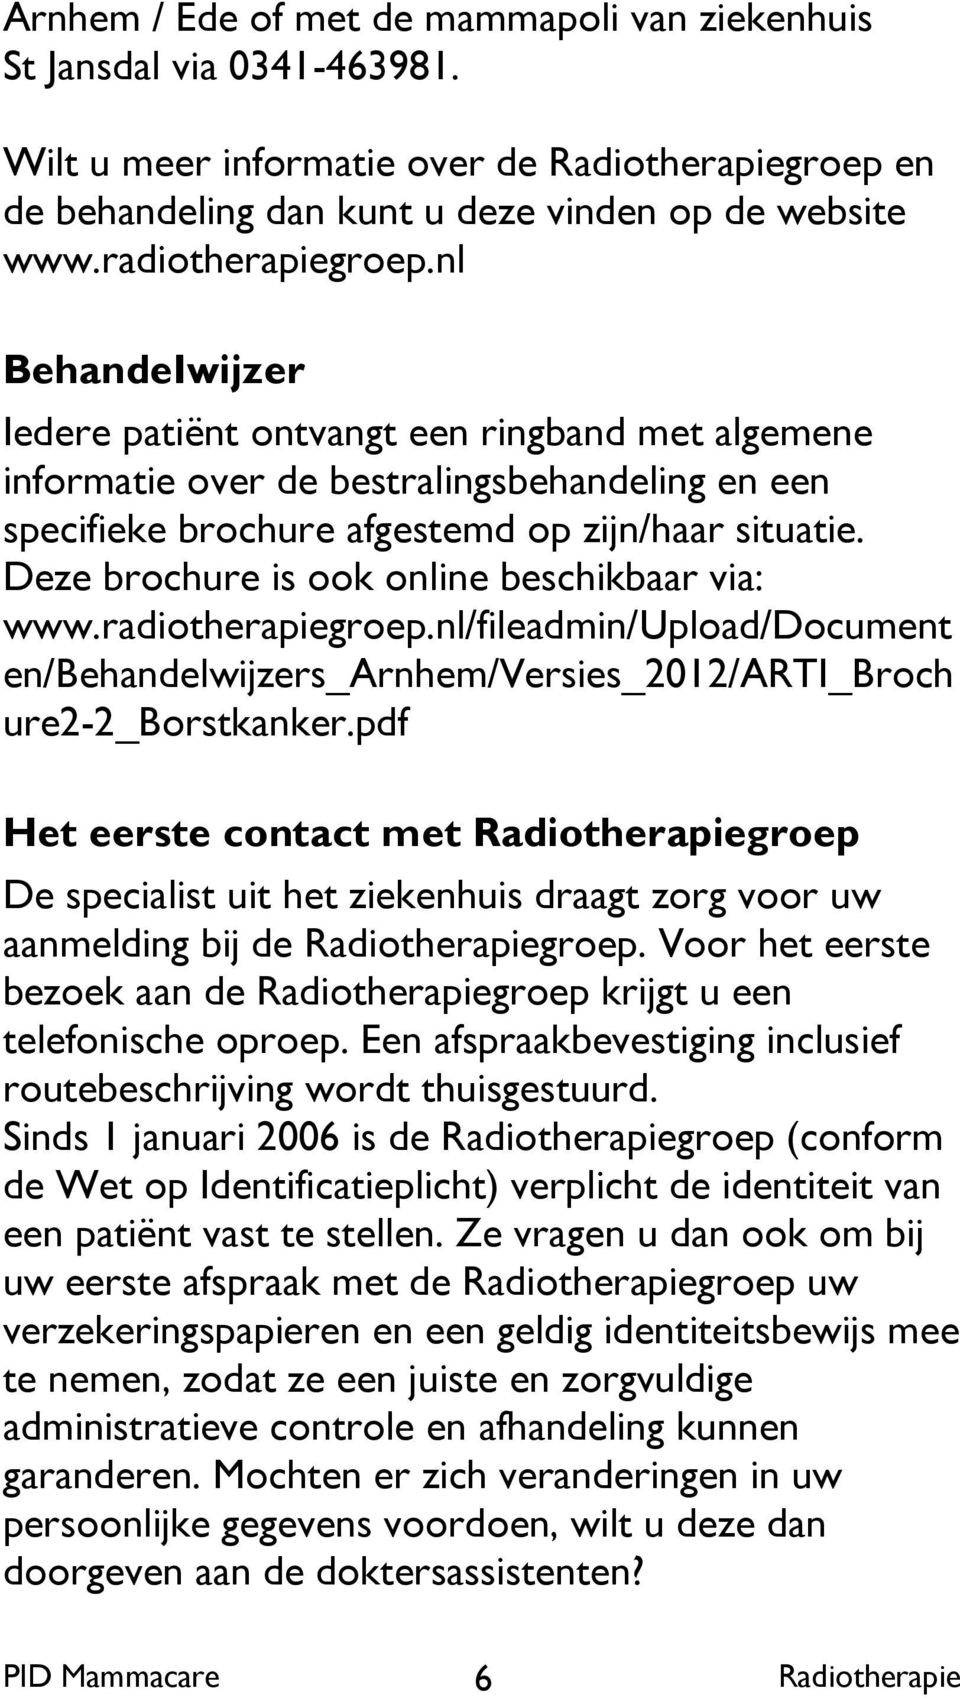 Deze brochure is ook online beschikbaar via: www.radiotherapiegroep.nl/fileadmin/upload/document en/behandelwijzers_arnhem/versies_2012/arti_broch ure2-2_borstkanker.